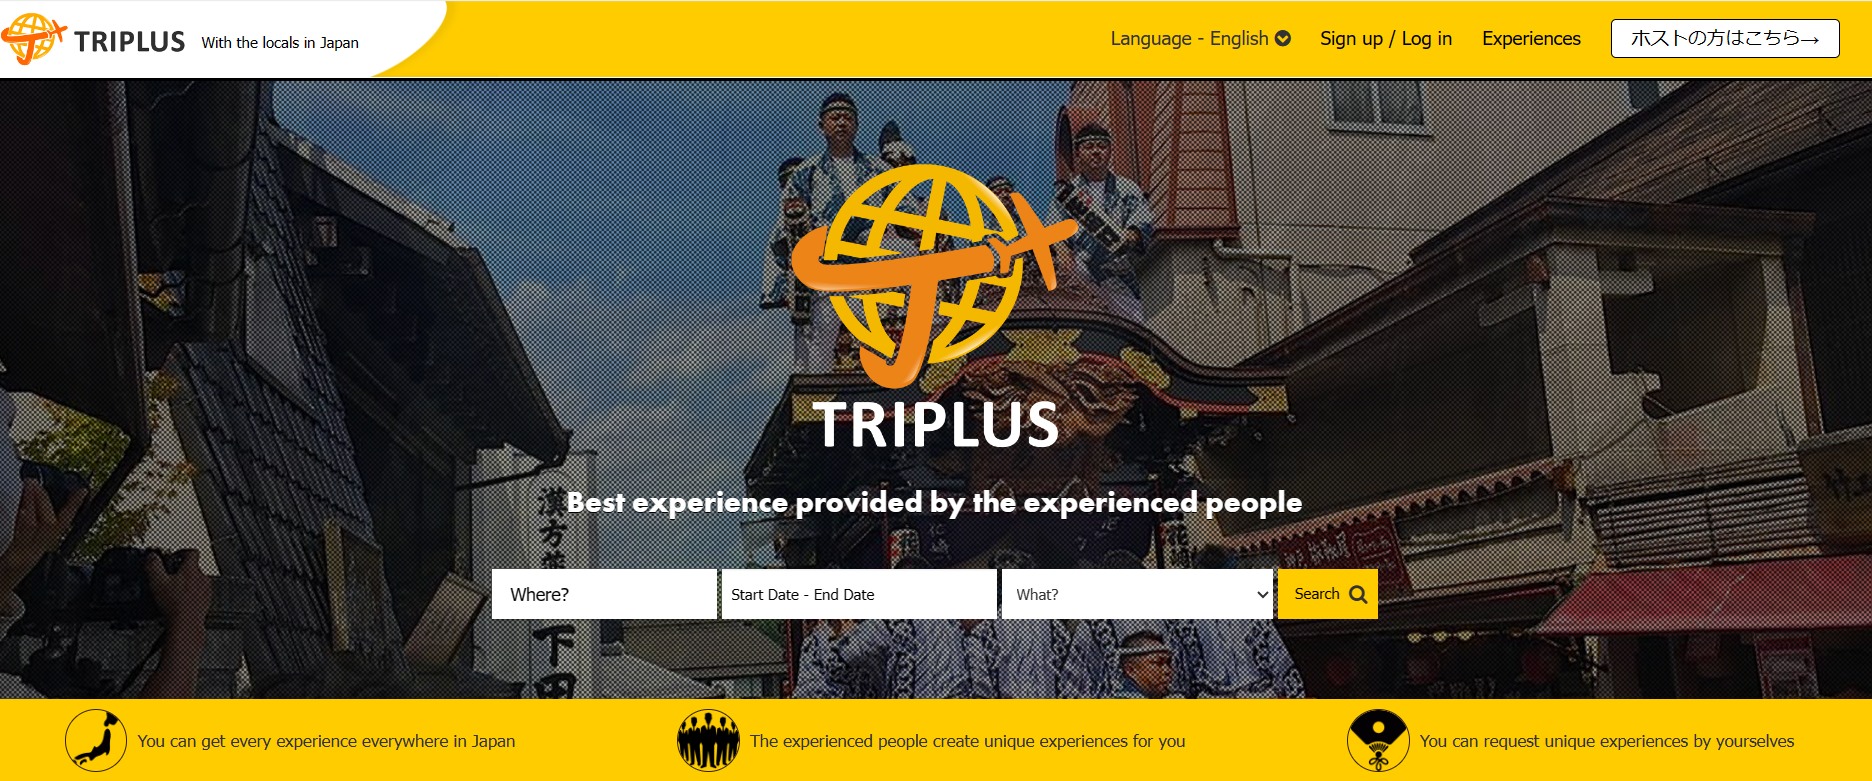 外国人旅行客向け体験型サービス「TRIPLUS（トリプラス）」がサービス提供を再開